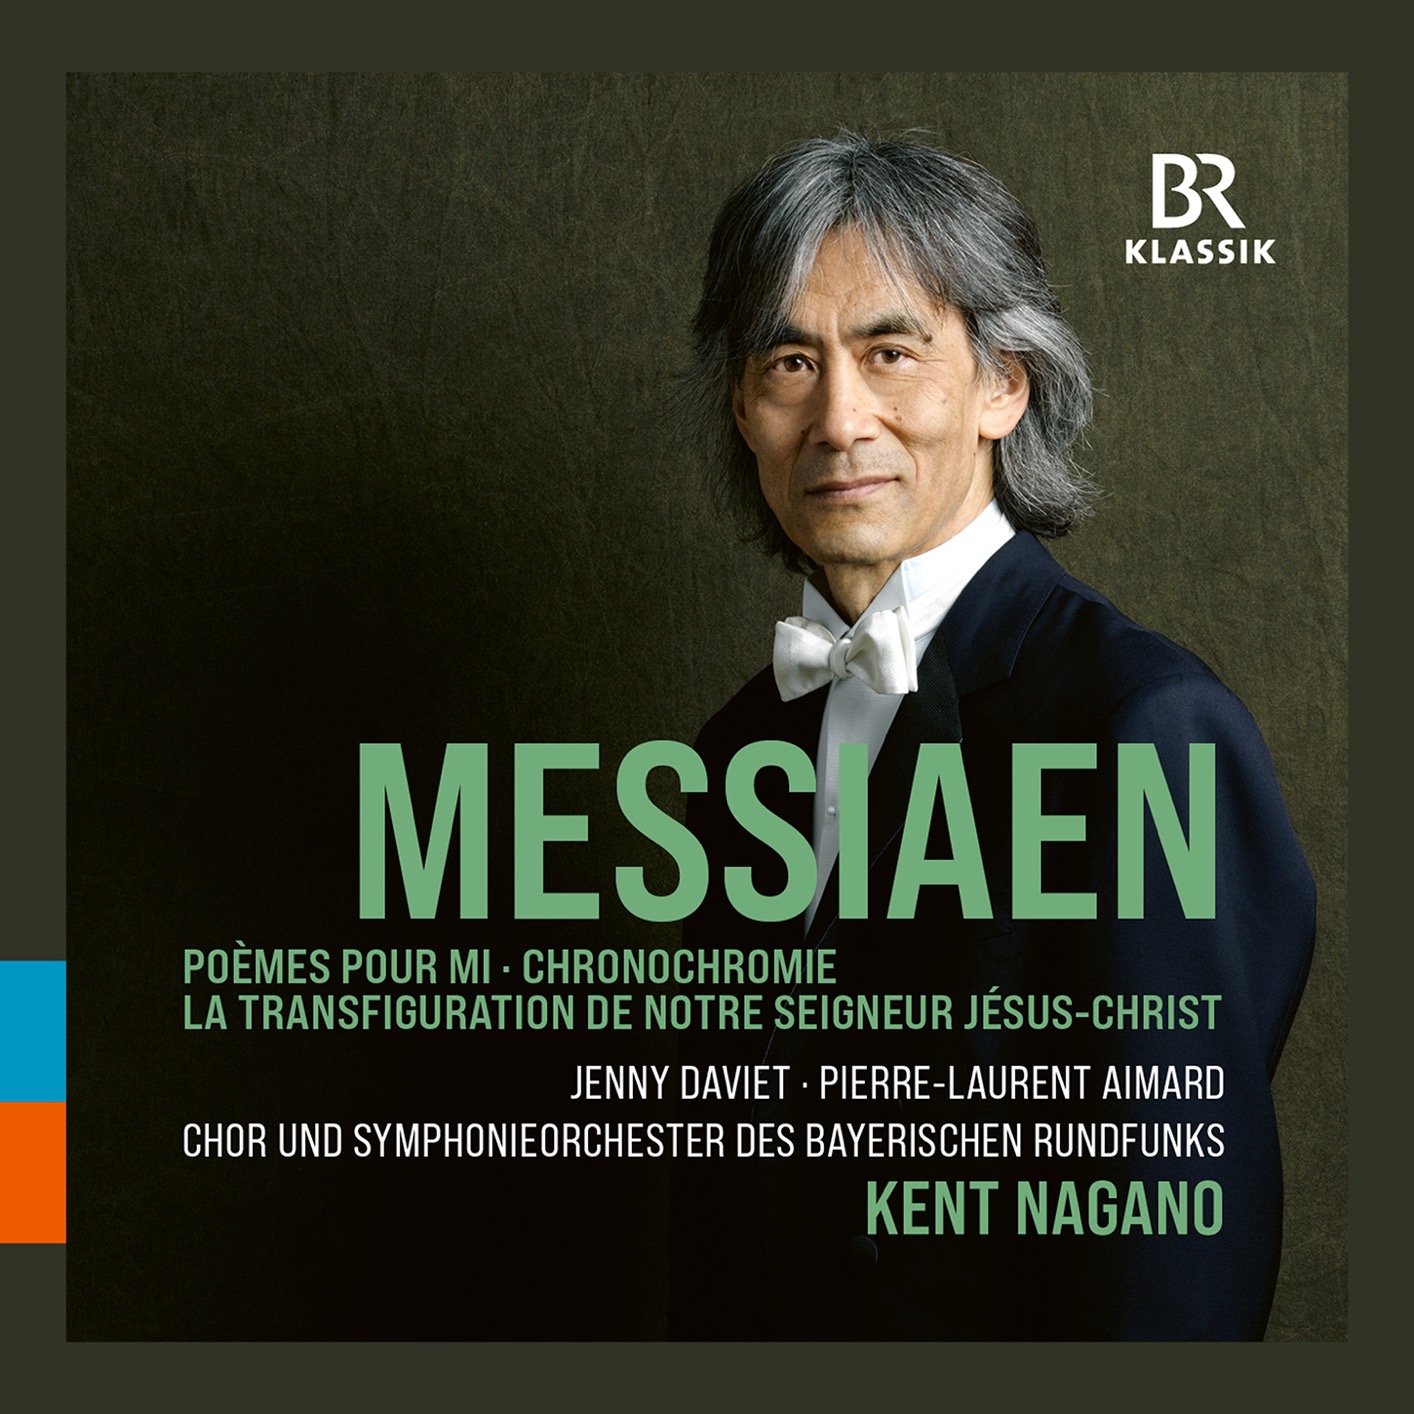 Chor und Symphonieorchester des Bayerischen Rundfunks & Kent Nagano – Messiaen – Orchestral Works (Live) (2021) [FLAC 24bit/48kHz]